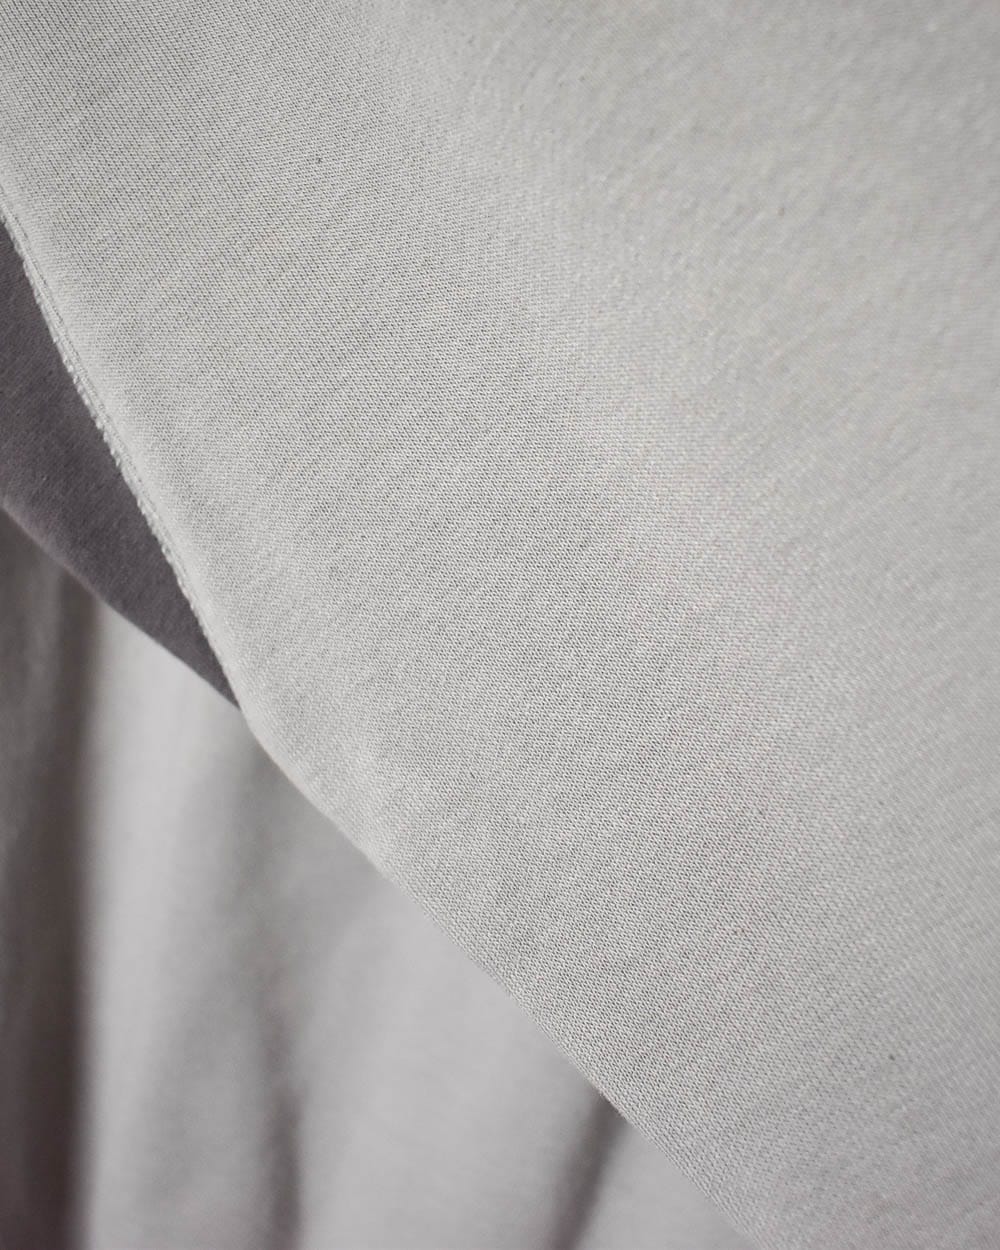 Grey Umbro Sweatshirt - X-Large